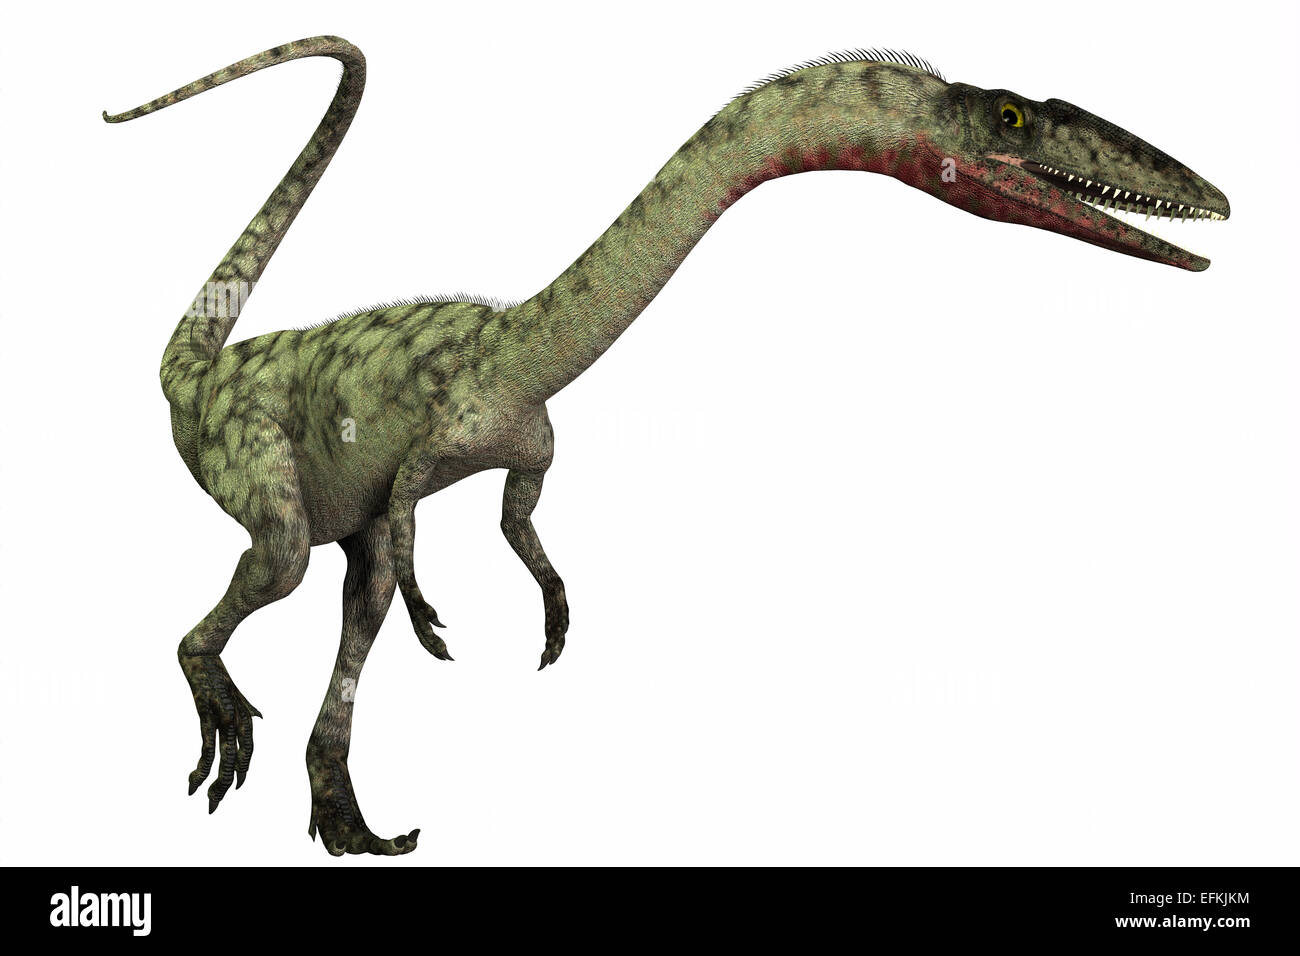 Coelophysis était un dinosaure prédateur bipède qui vivait pendant la période du Trias de l'Amérique du Nord. Banque D'Images